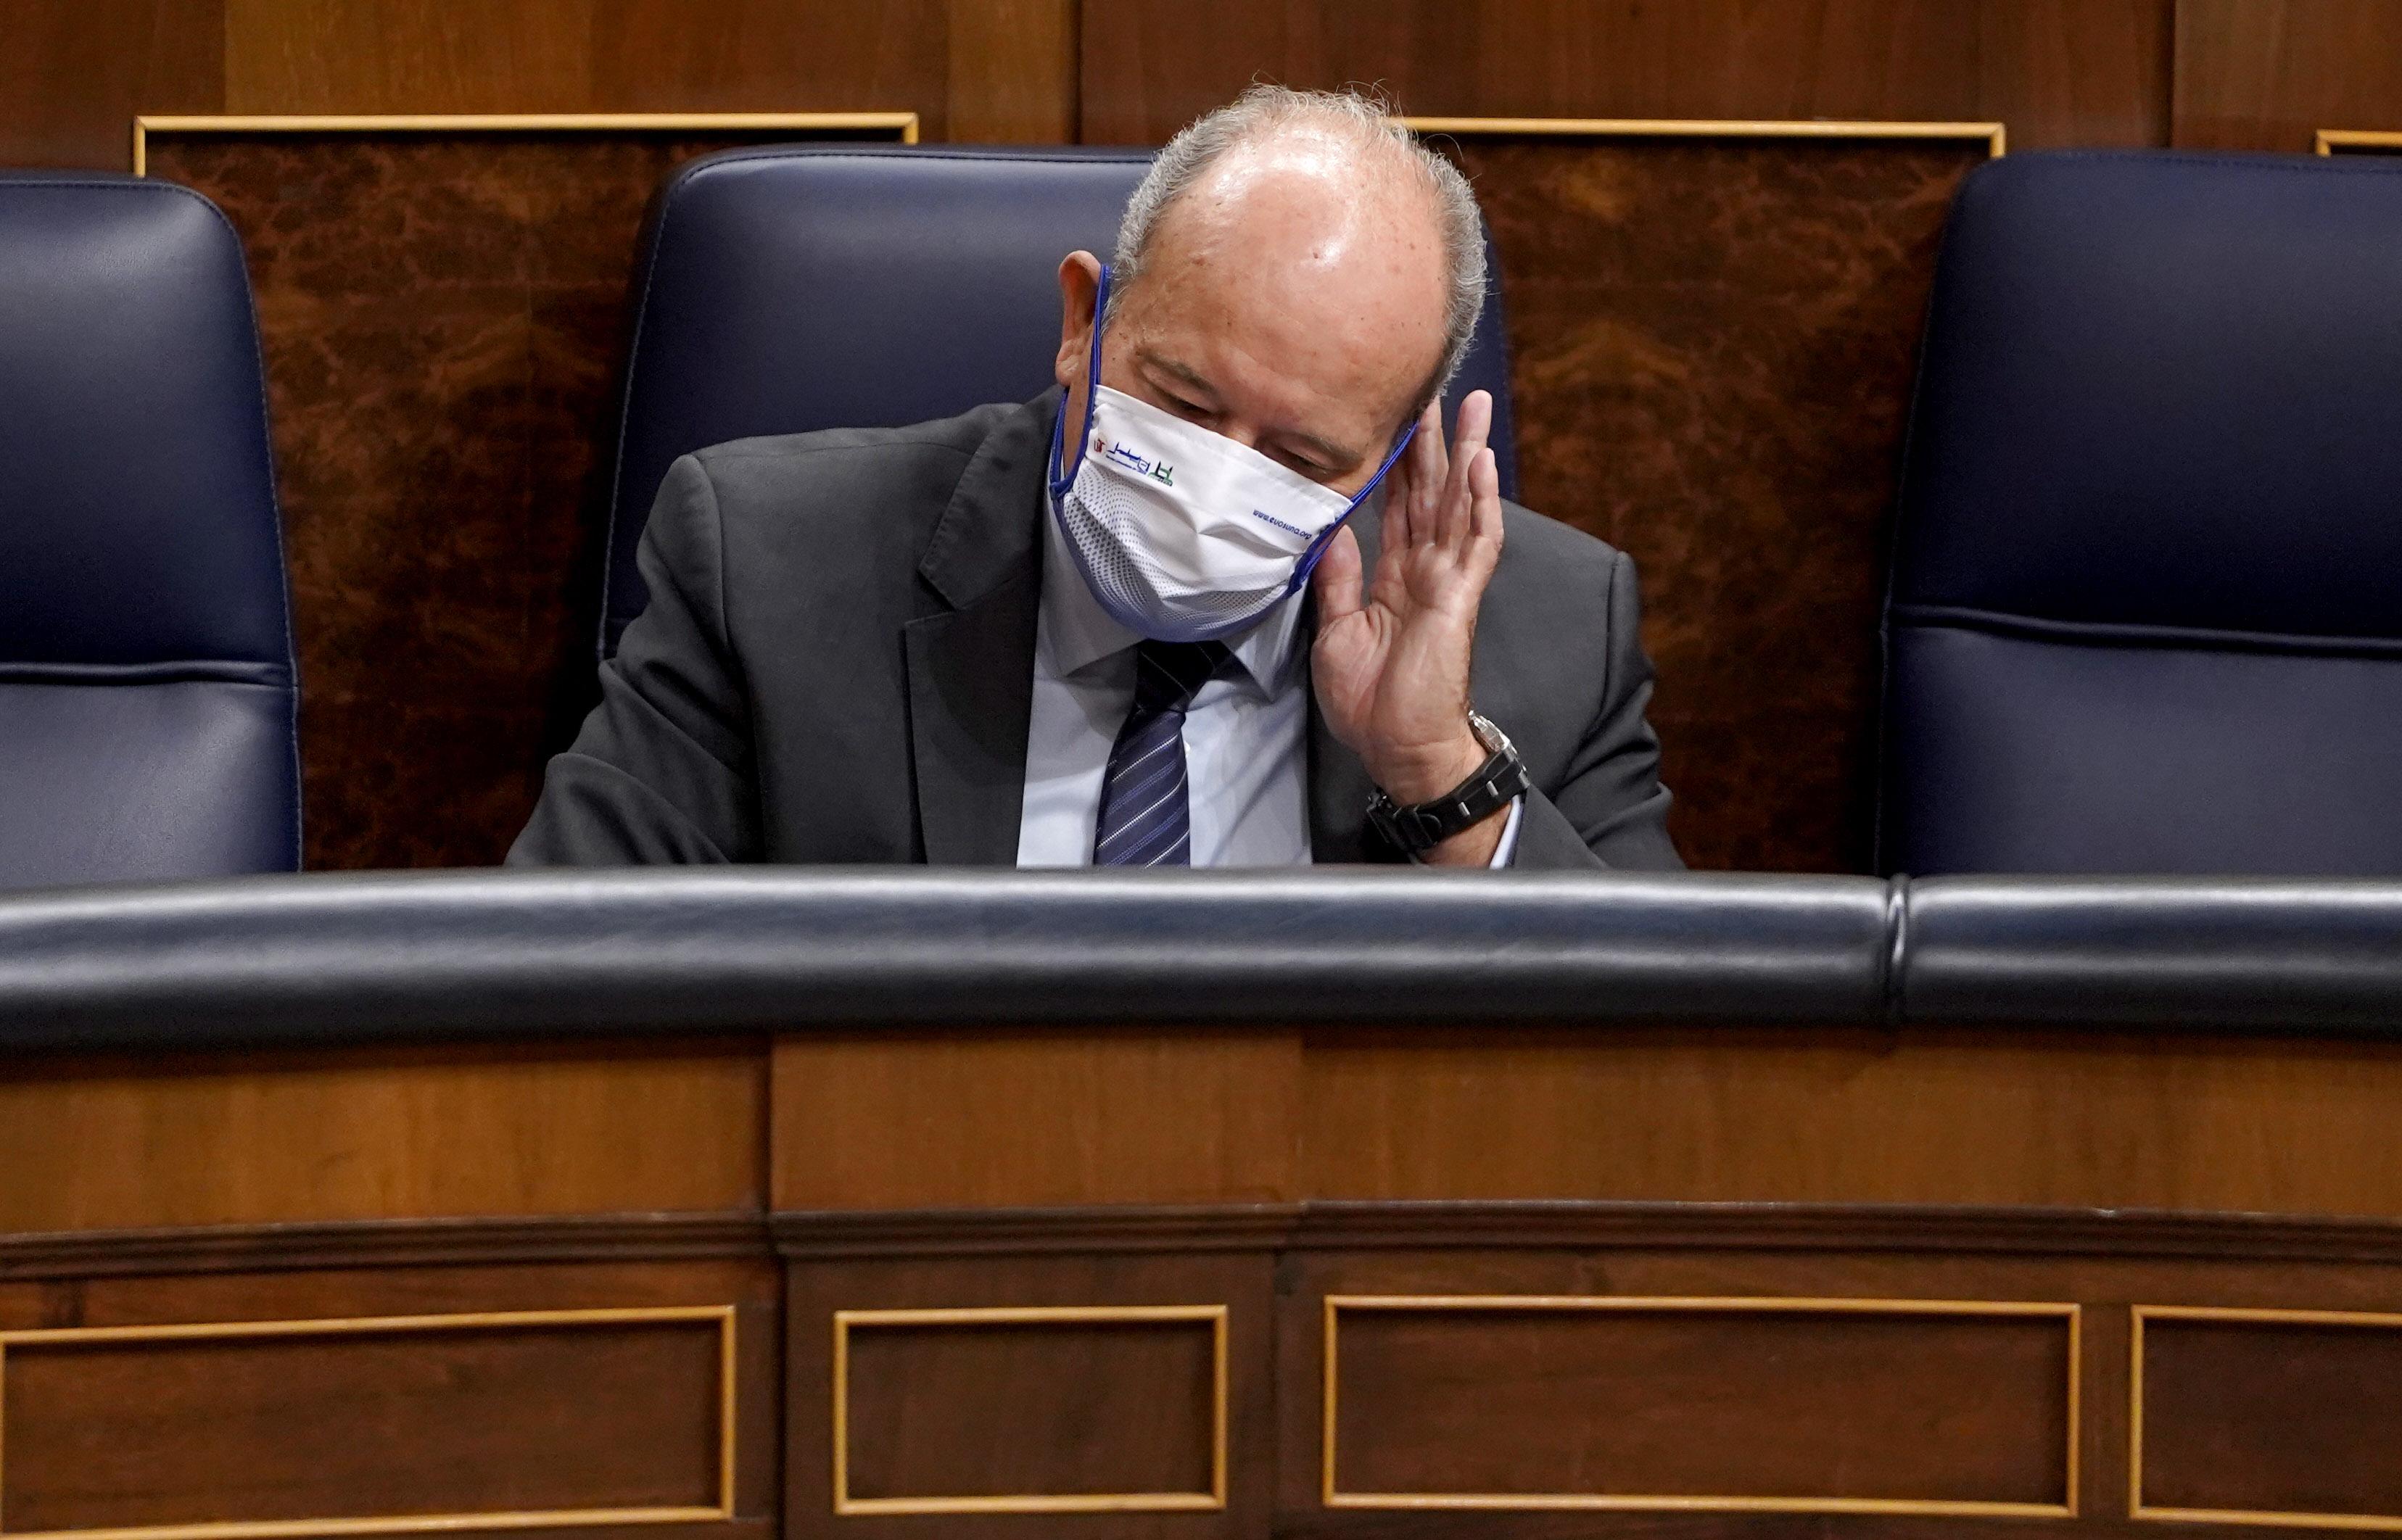  El ministro de Justicia, Juan Carlos Campo, sentado en su escaño durante una sesión de control al Gobierno en el Congreso de los Diputados / EP